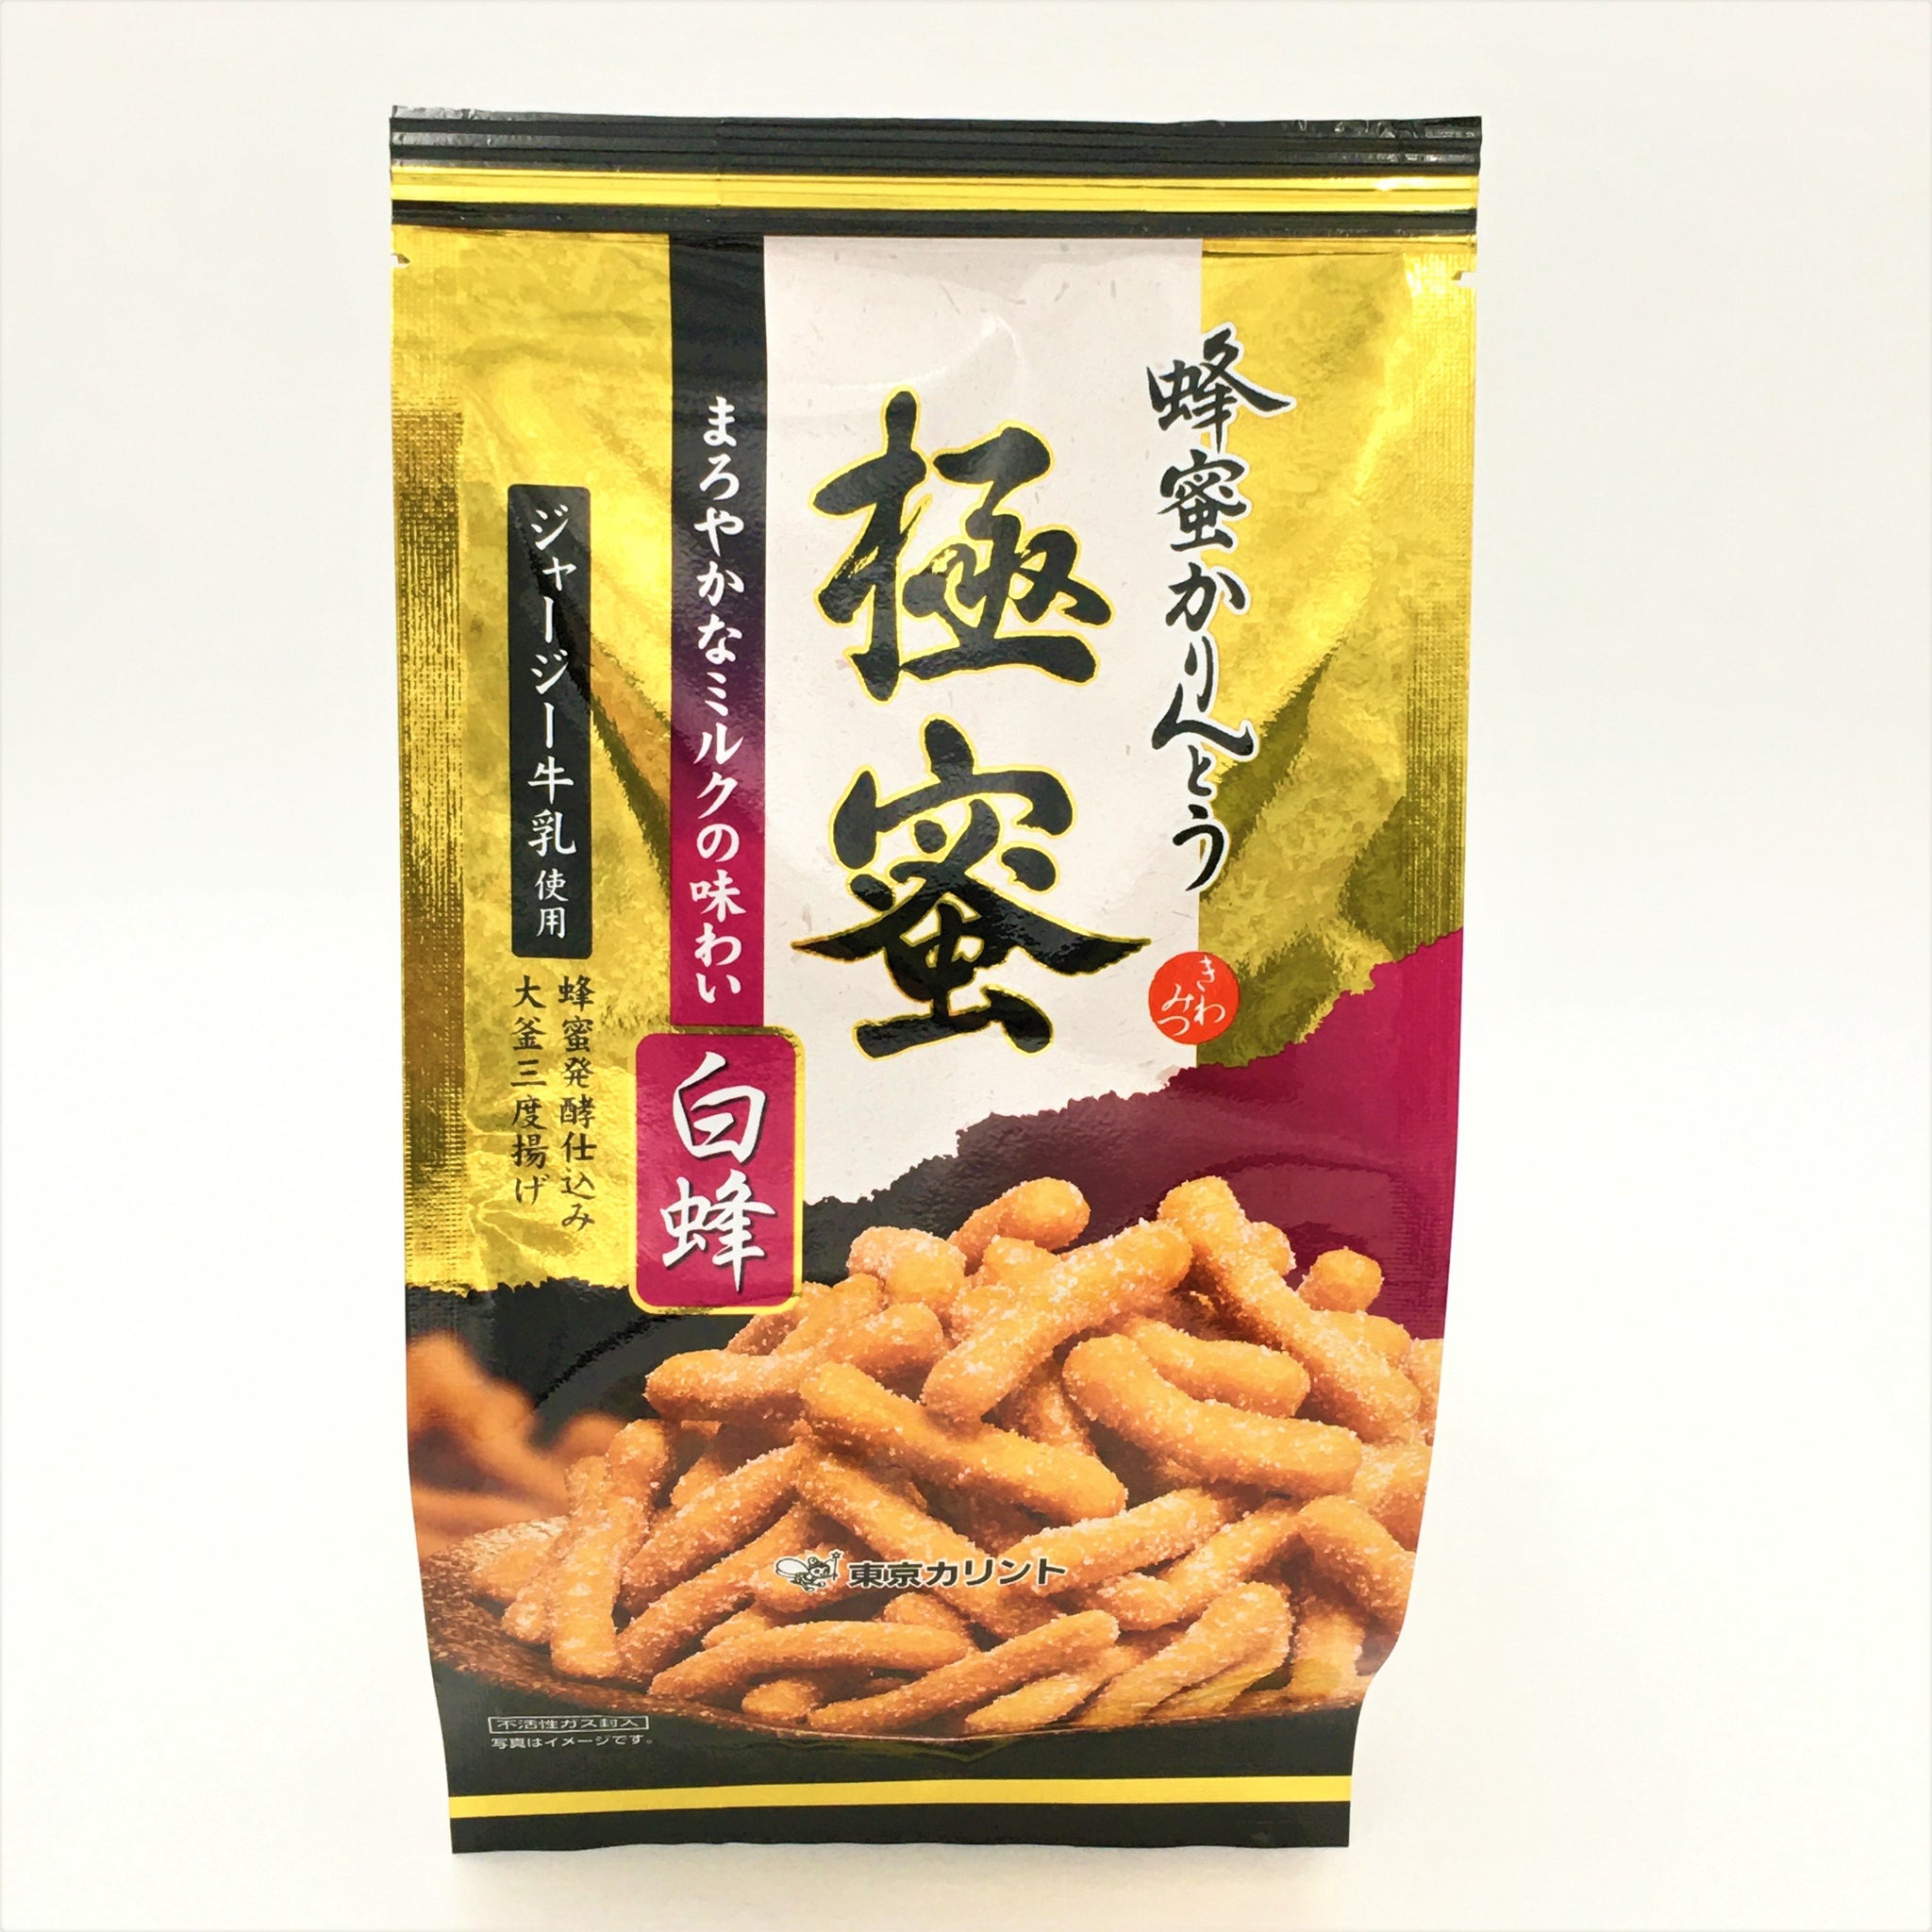 Tokyo Karinto Kiwamitsu Shirohachi Wheat Cracker 130g